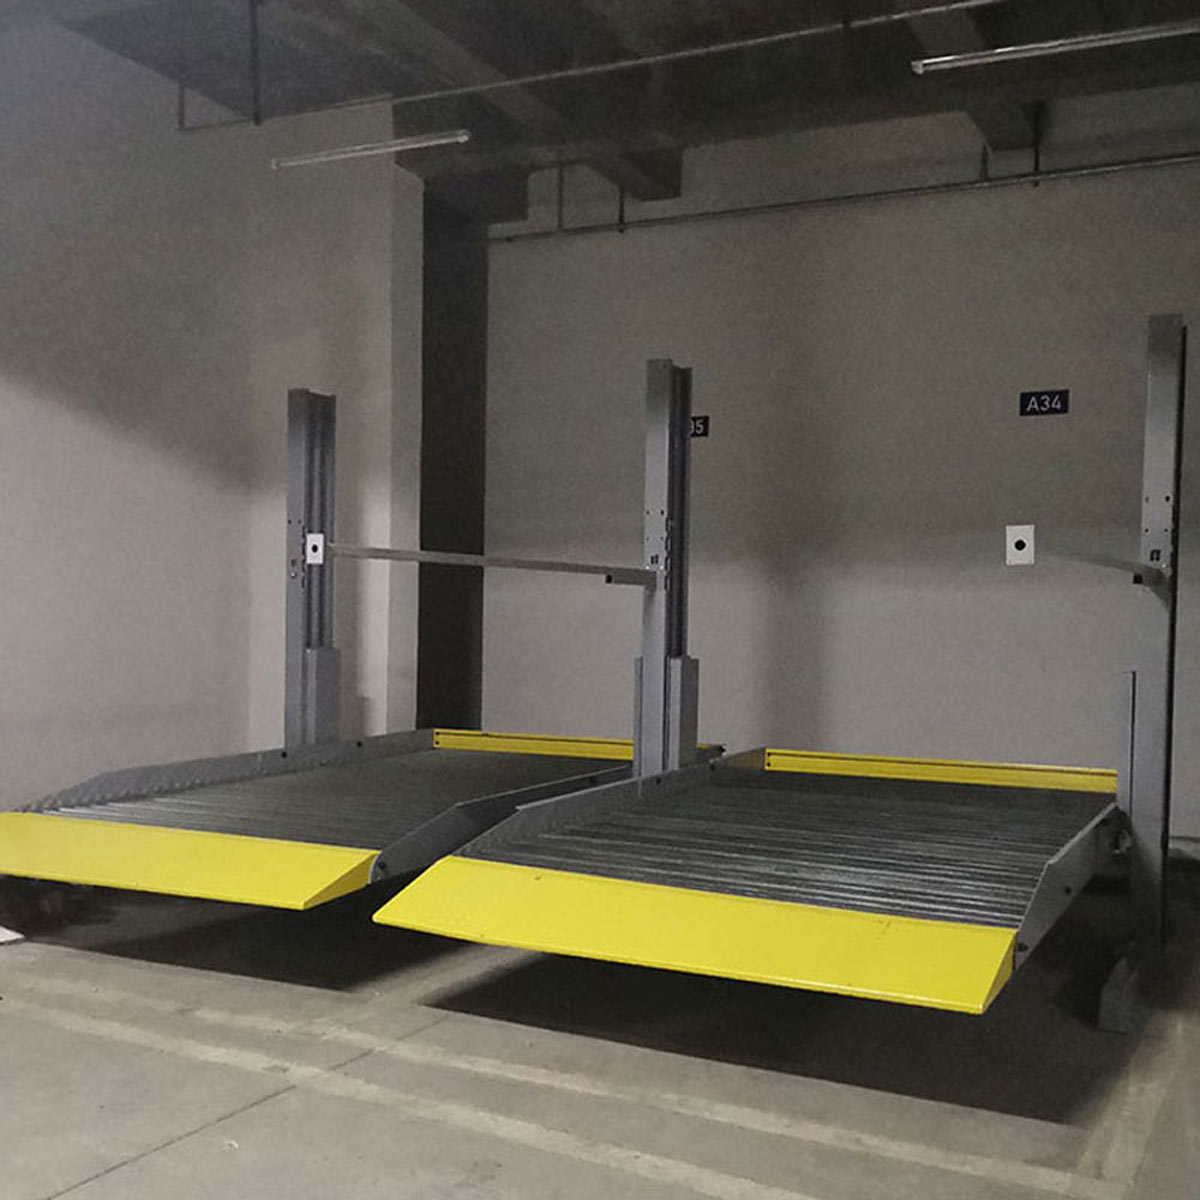 康樂自動化停車庫的設計思路